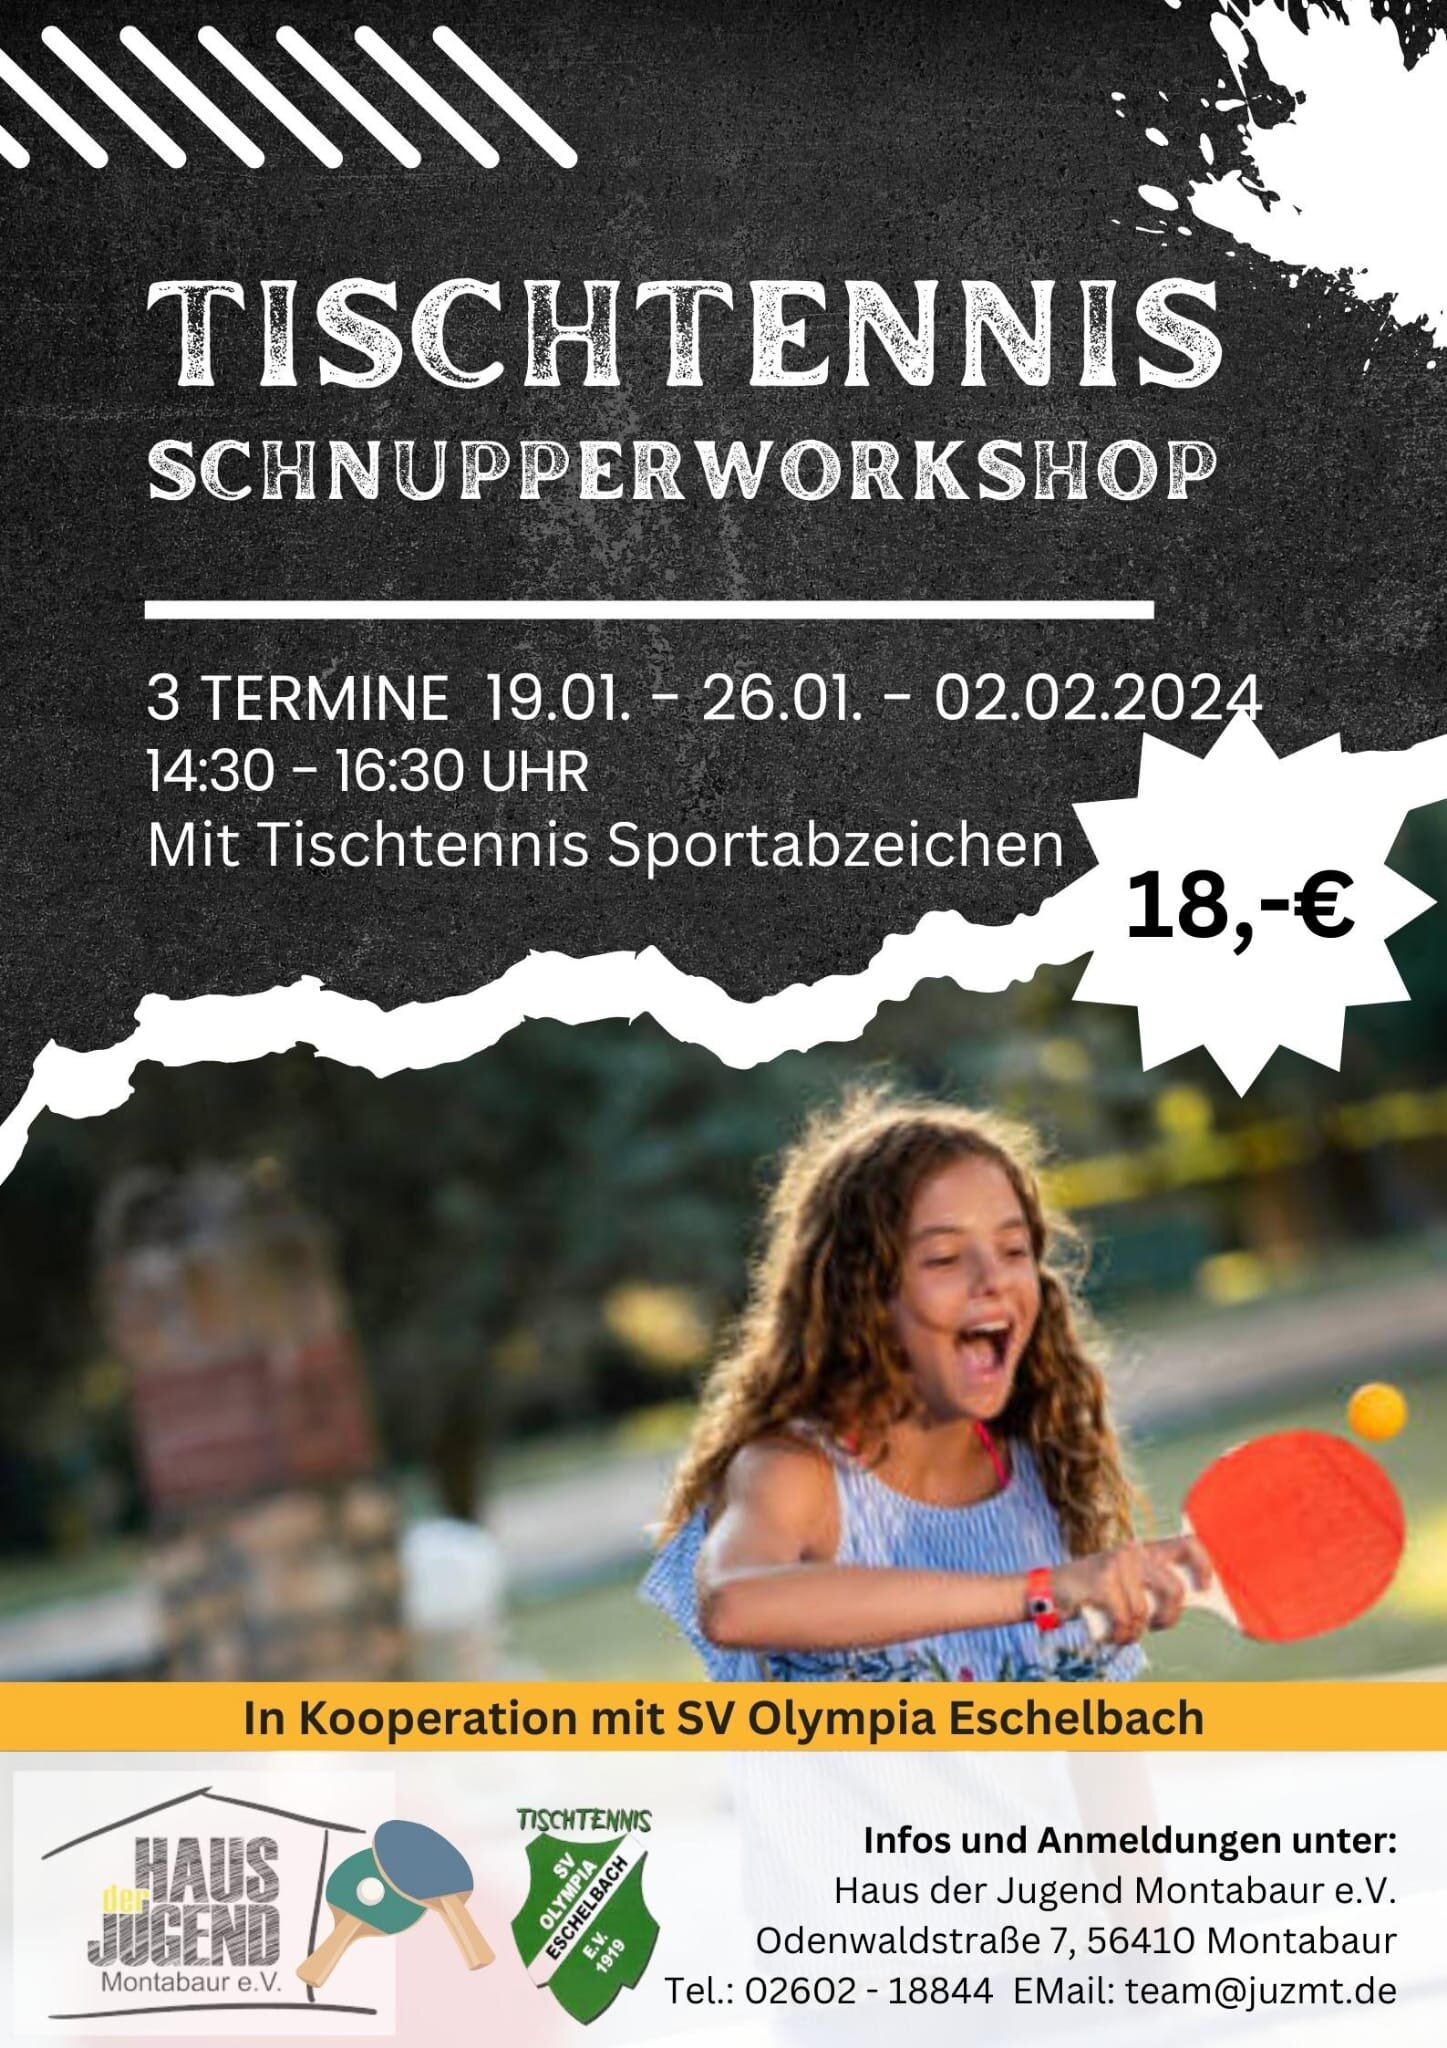 Tischtennis Schnupperworkshop mit Sportabzeichen